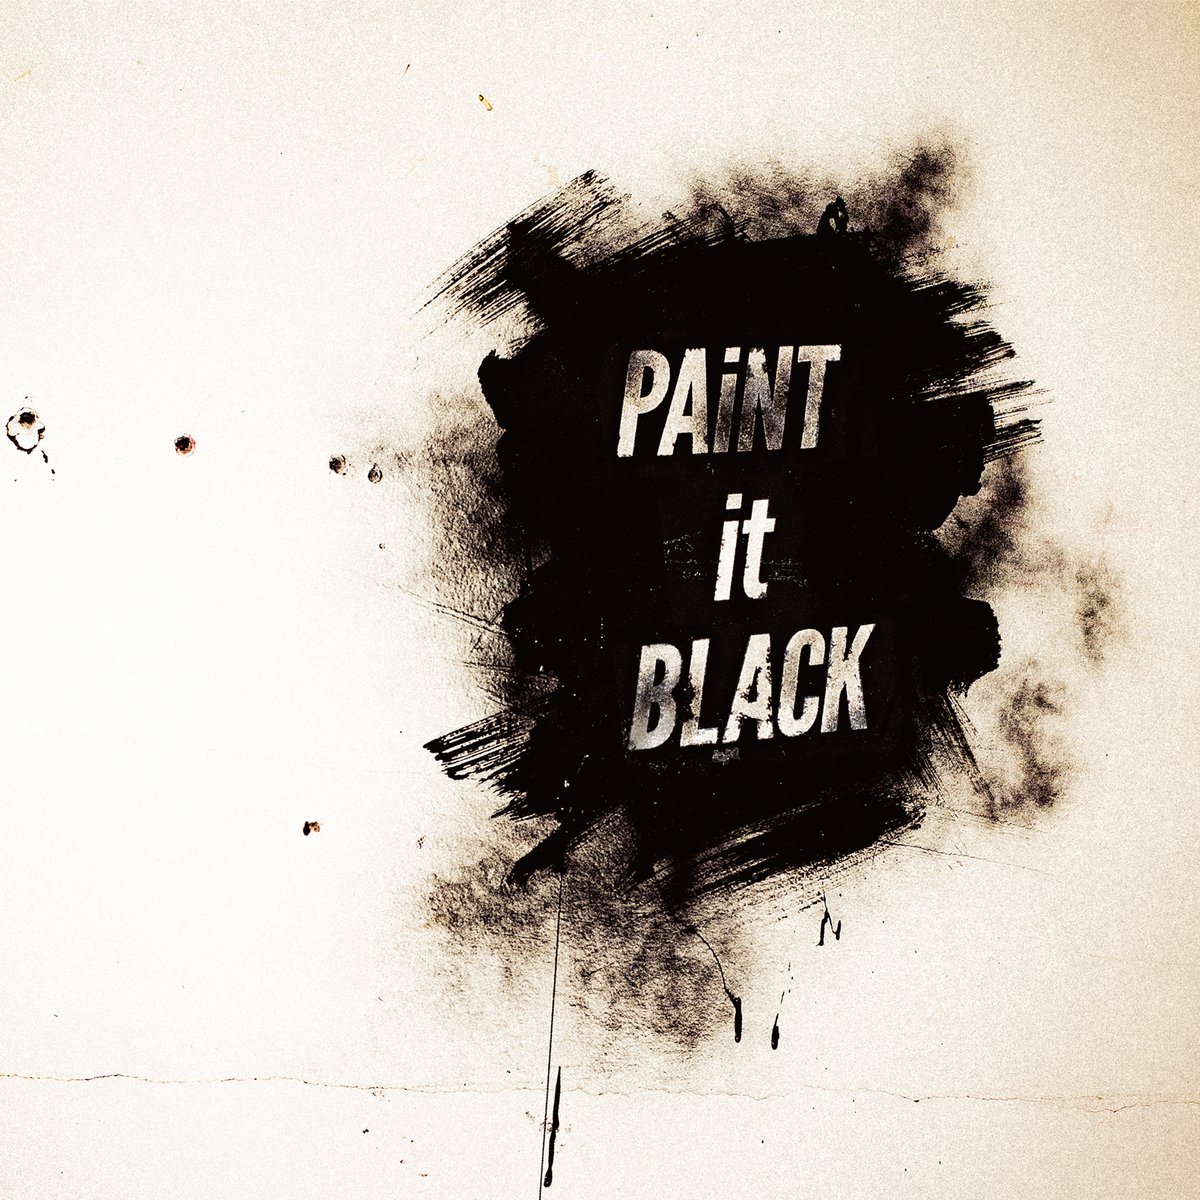 Bishの新曲 Paint It Black の歌詞とアニメ ブラッククローバー って Bishと全国清掃員による武道館への道程